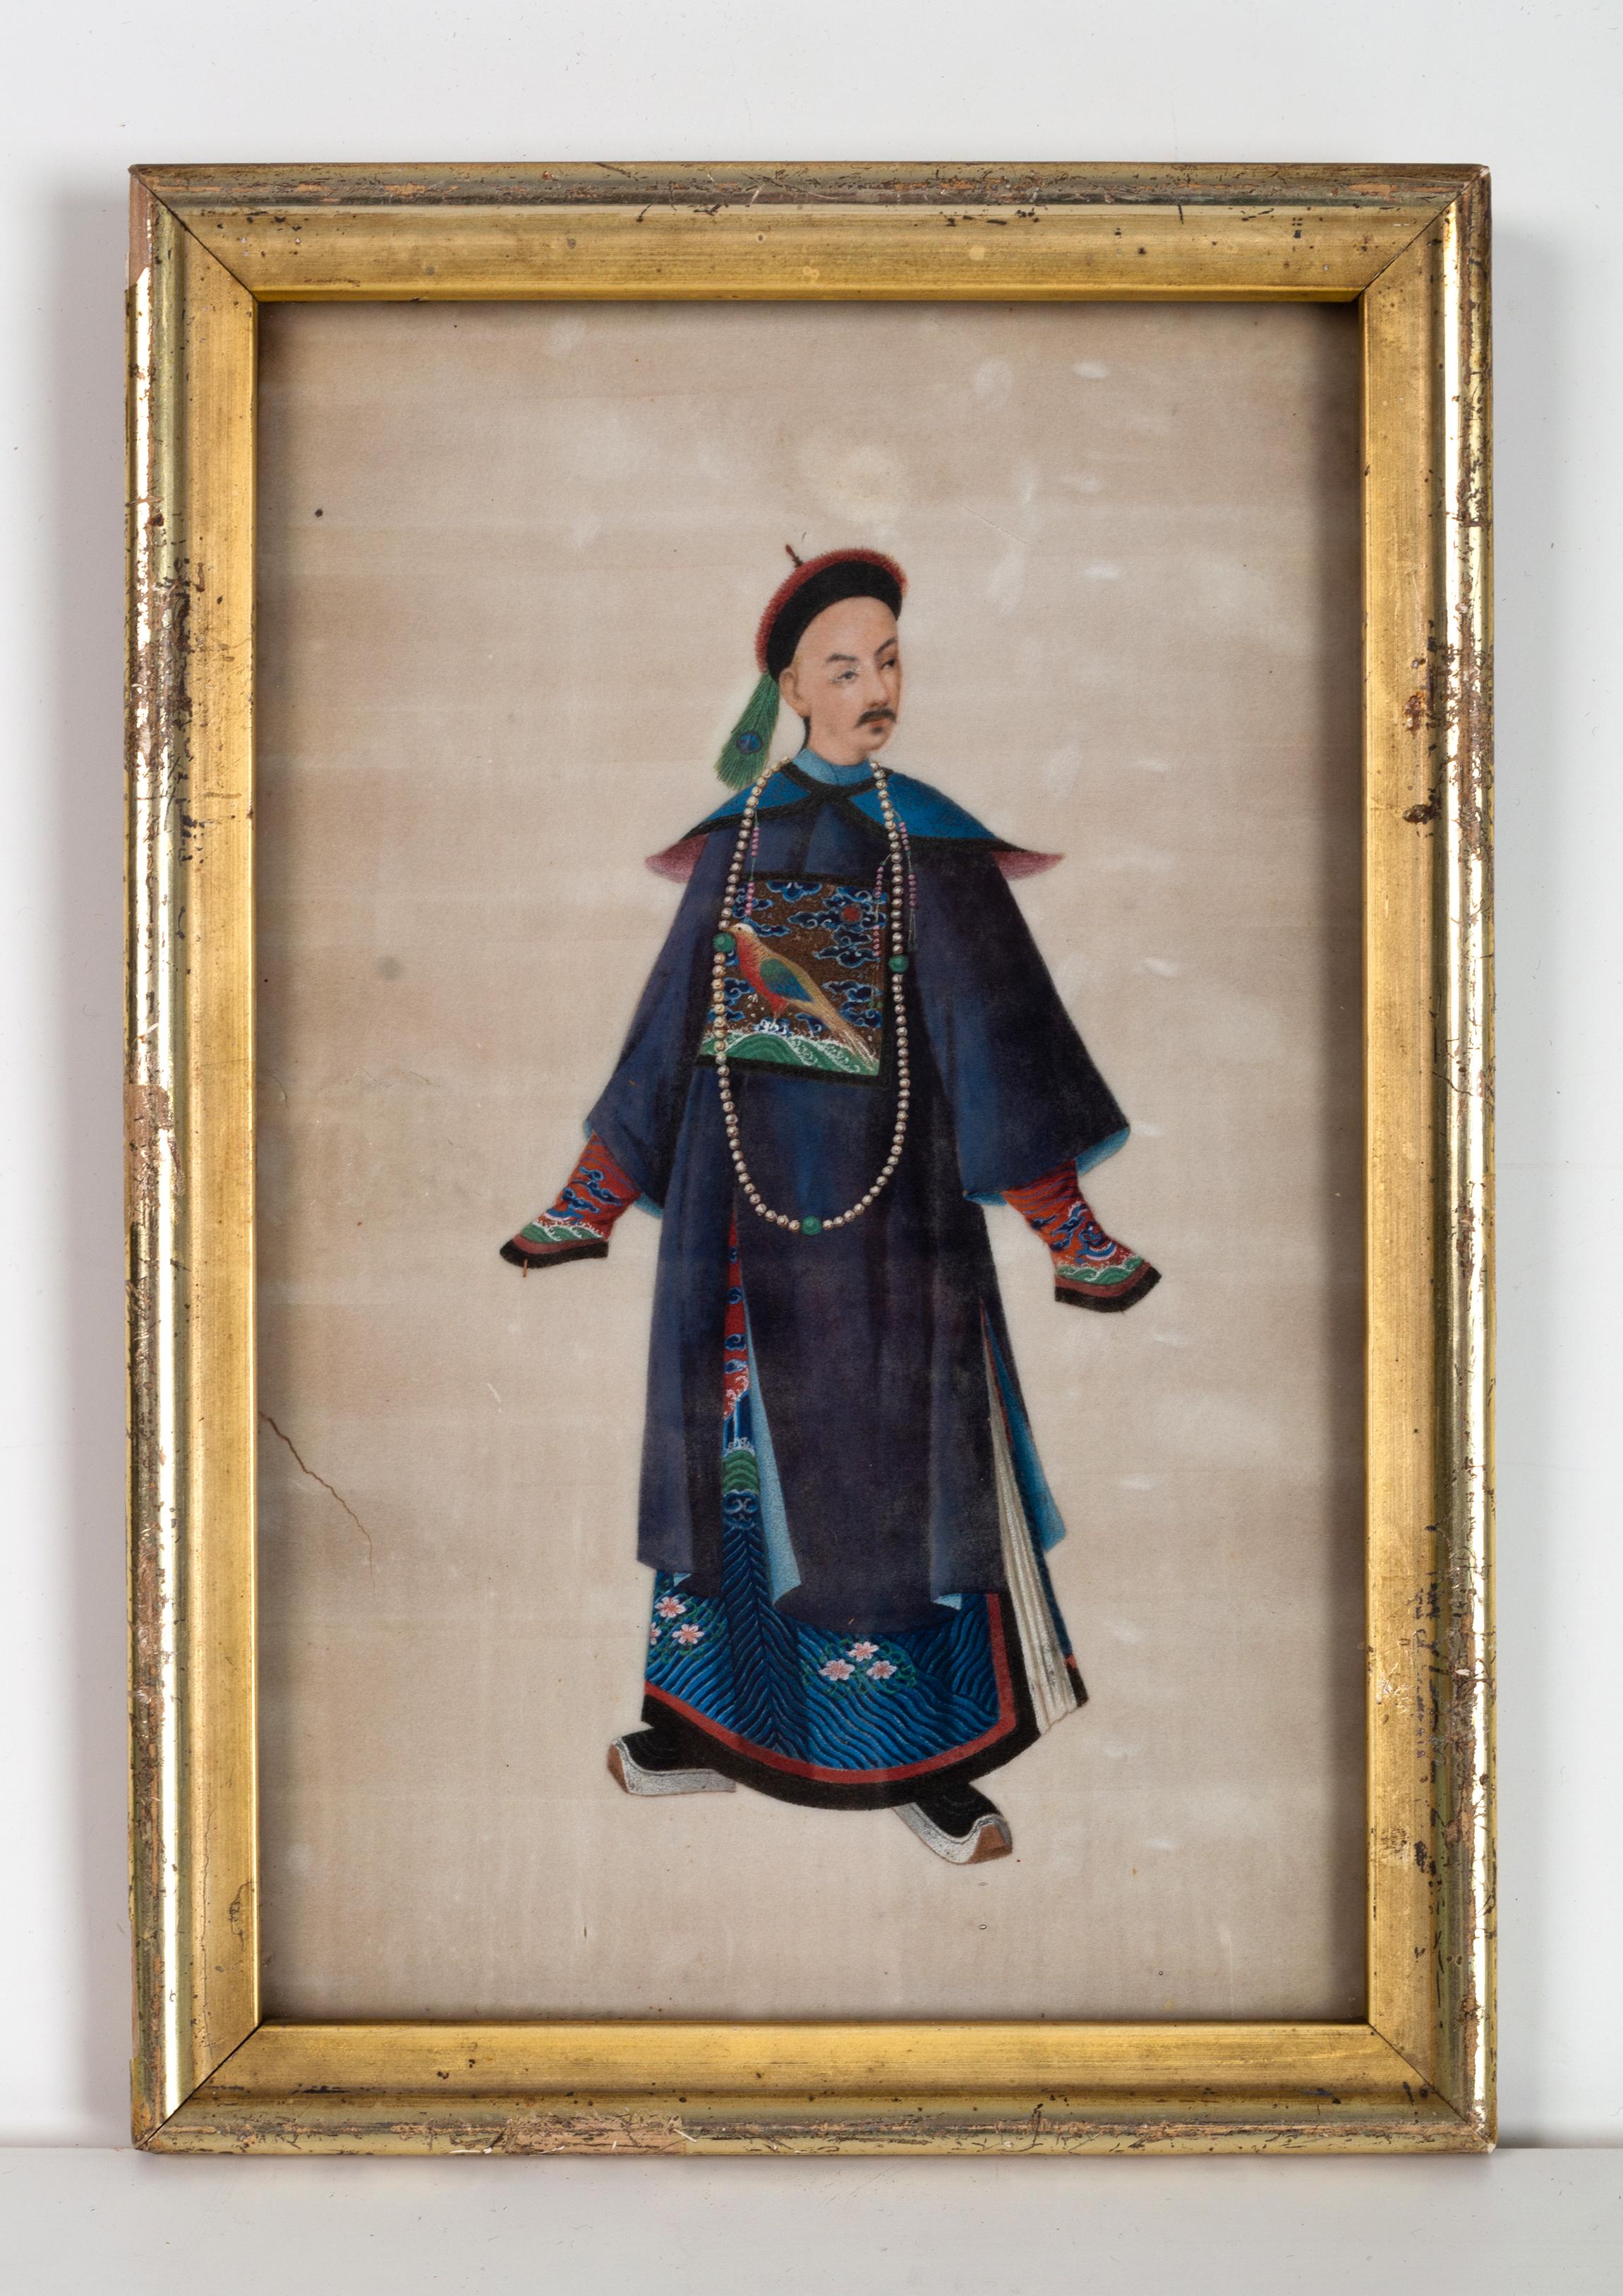 Collectional de cinq portraits à la gouache d'exportation chinoise du XIXe siècle sur papier à moelle.
C.1850
Représentation de personnages de la cour en tenue impériale
Encadré et vitré
Superbe Collection'S
En très bon état, avec les signes d'usure